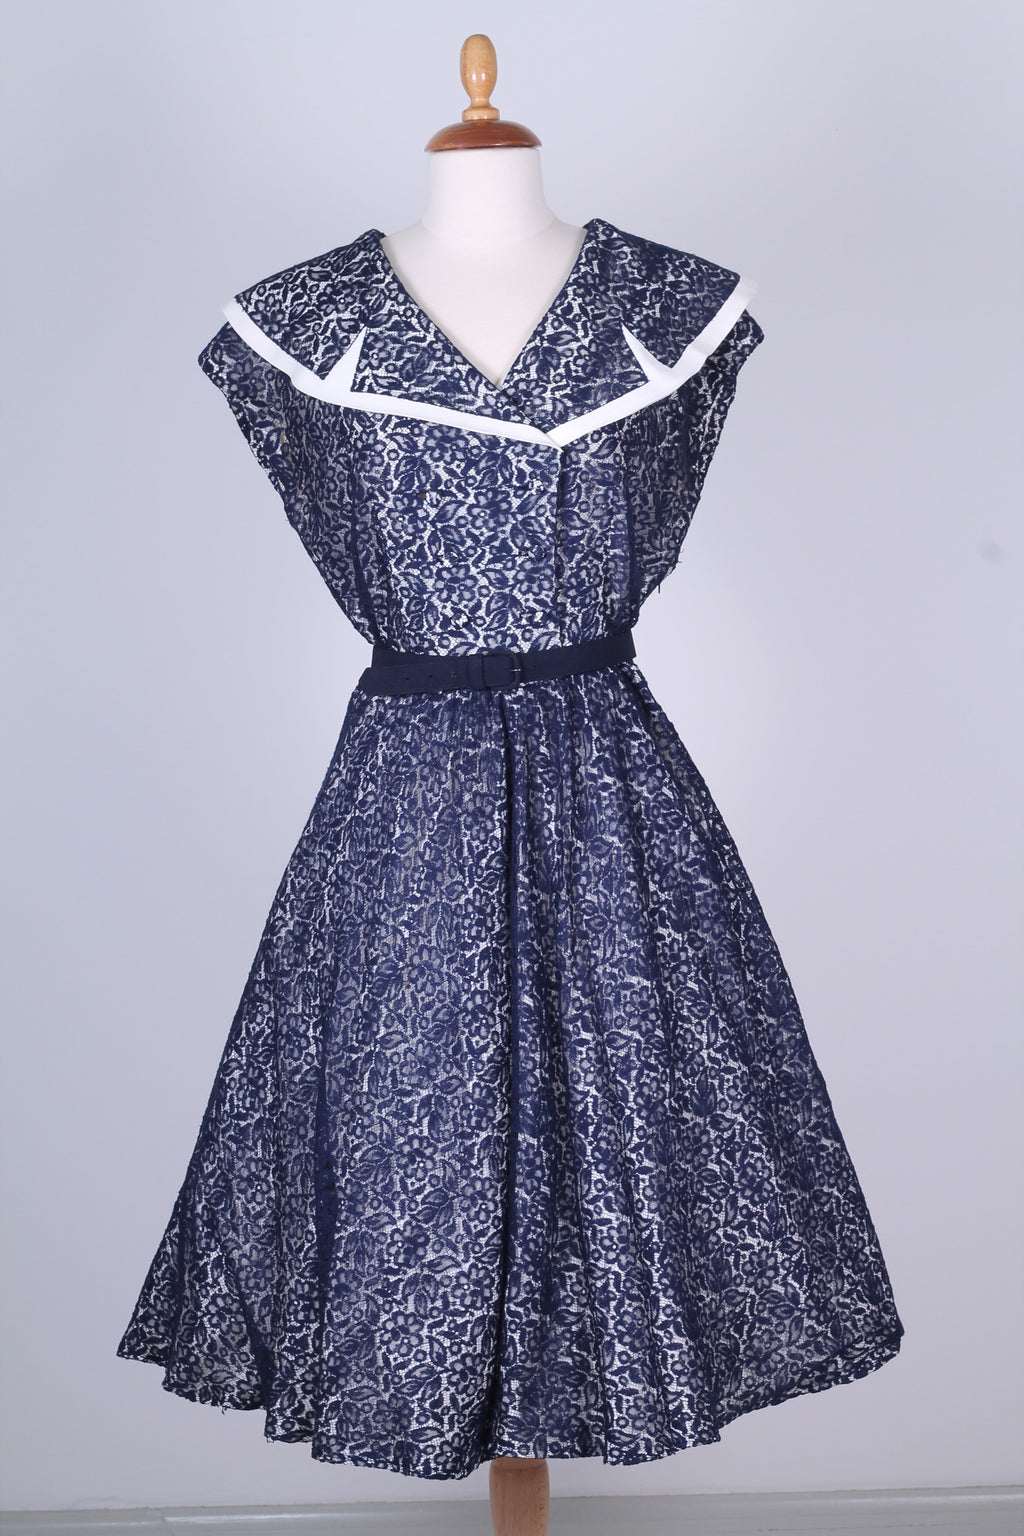 Solgt vintage tøj - Selskabskjole 1950. M - Solgt - Vintage Divine - 1